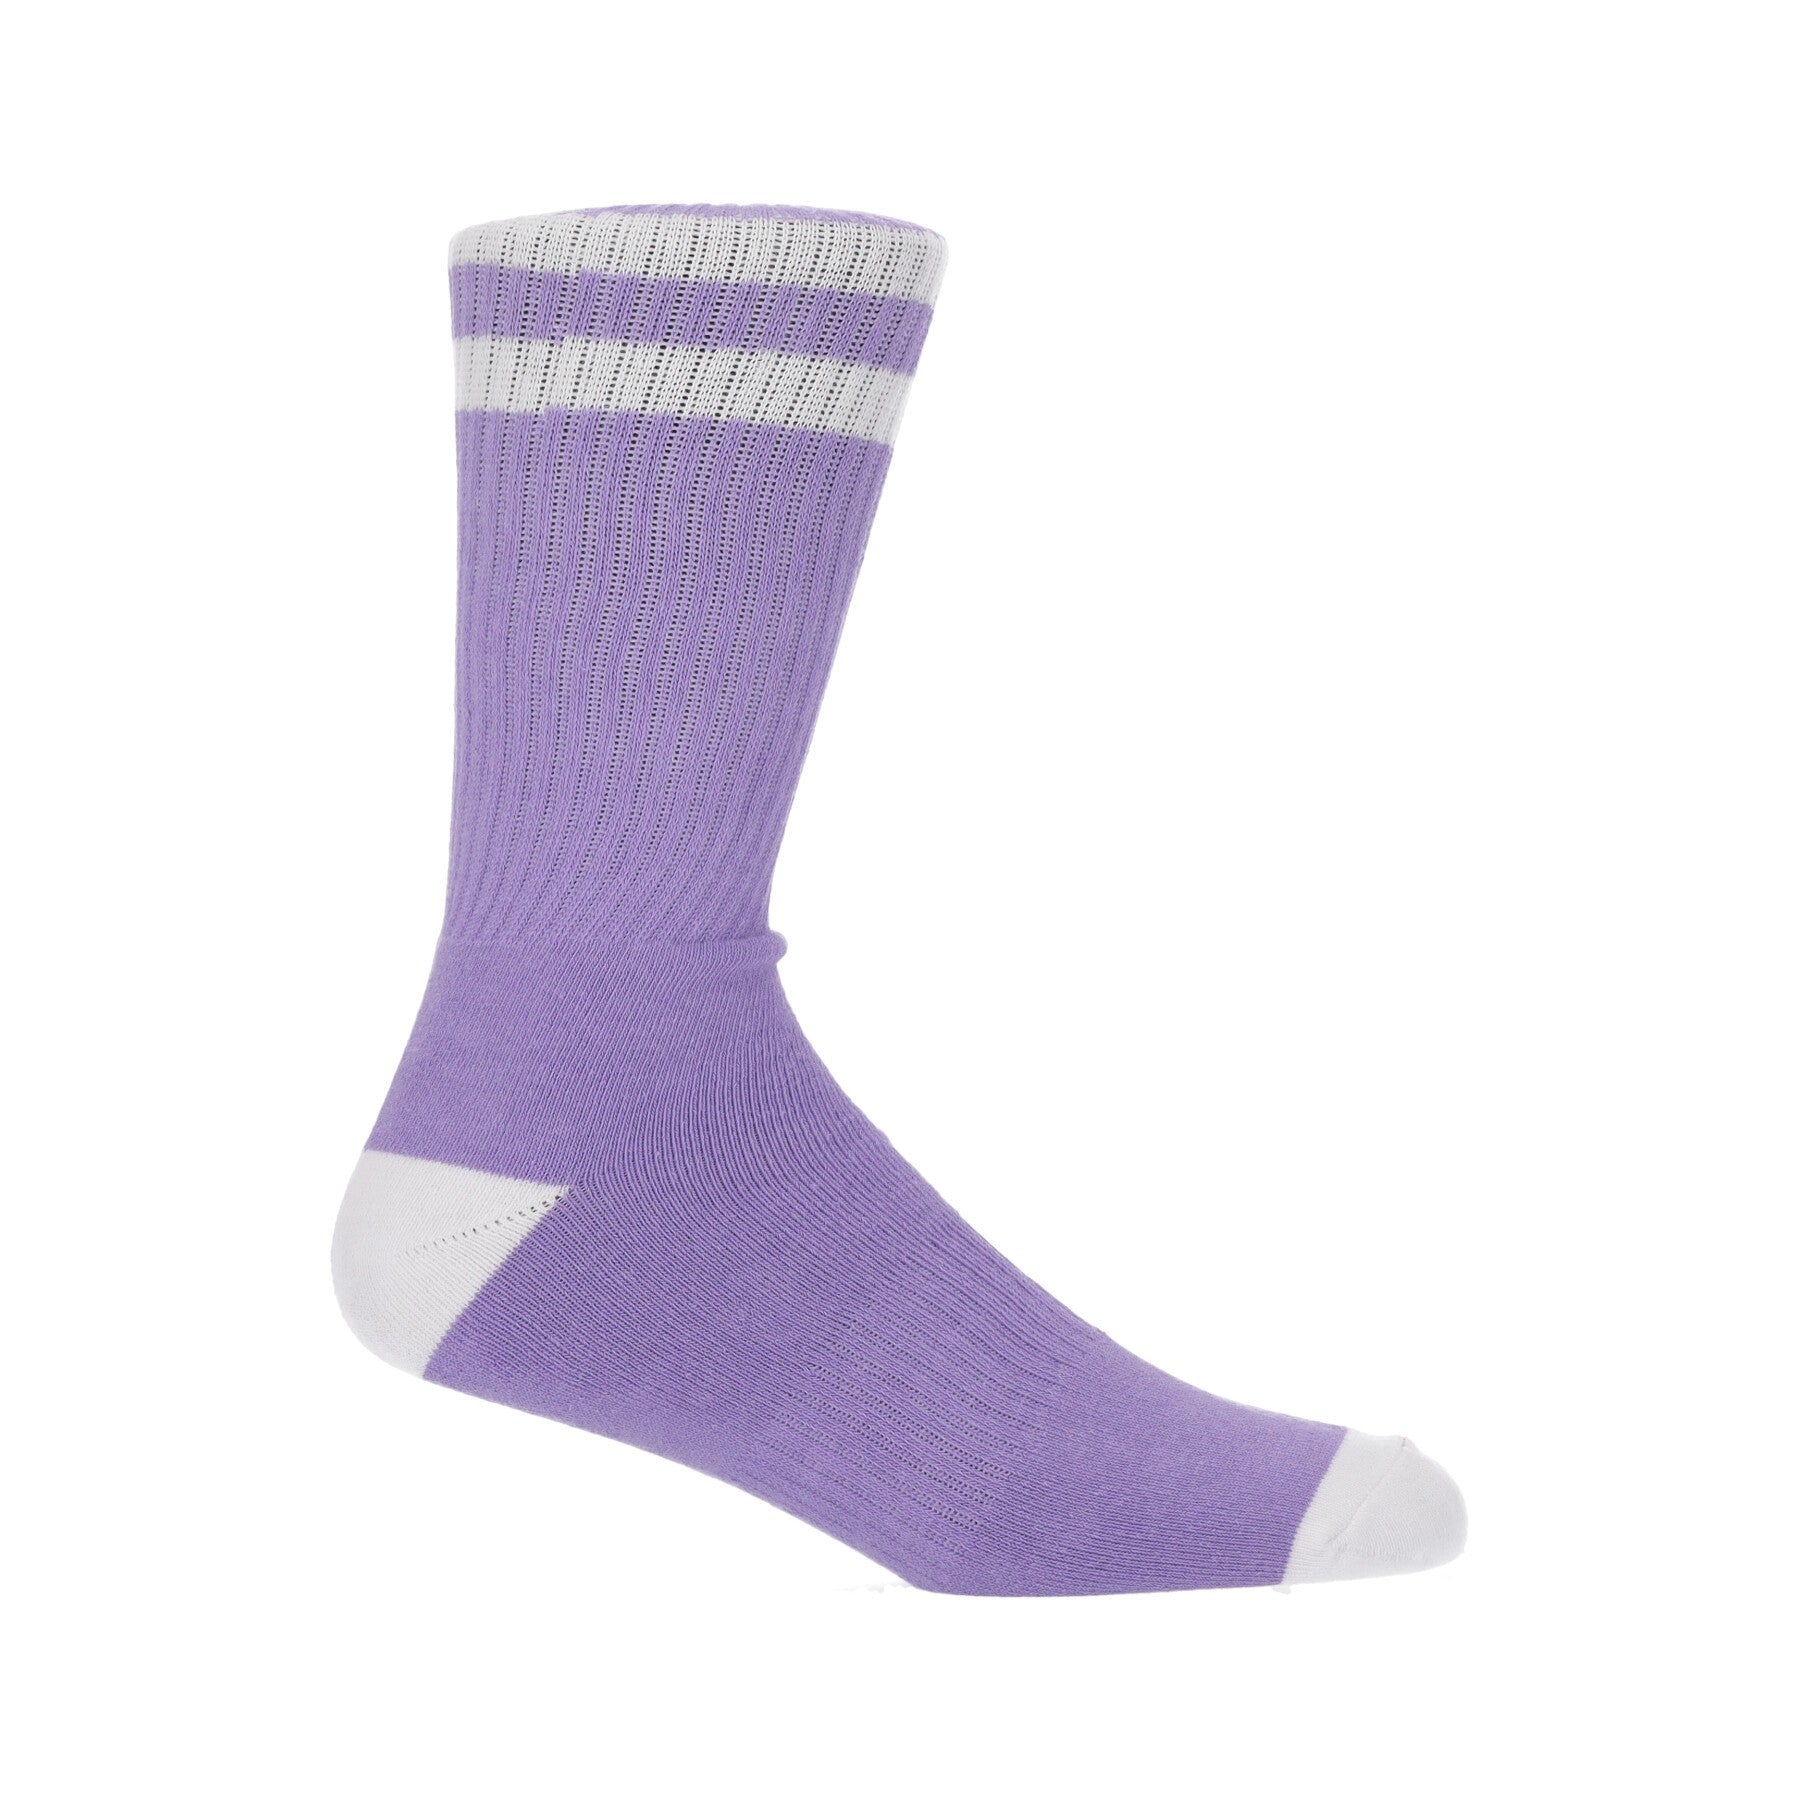 Clearsight Socks Daybreak Men's Medium Sock